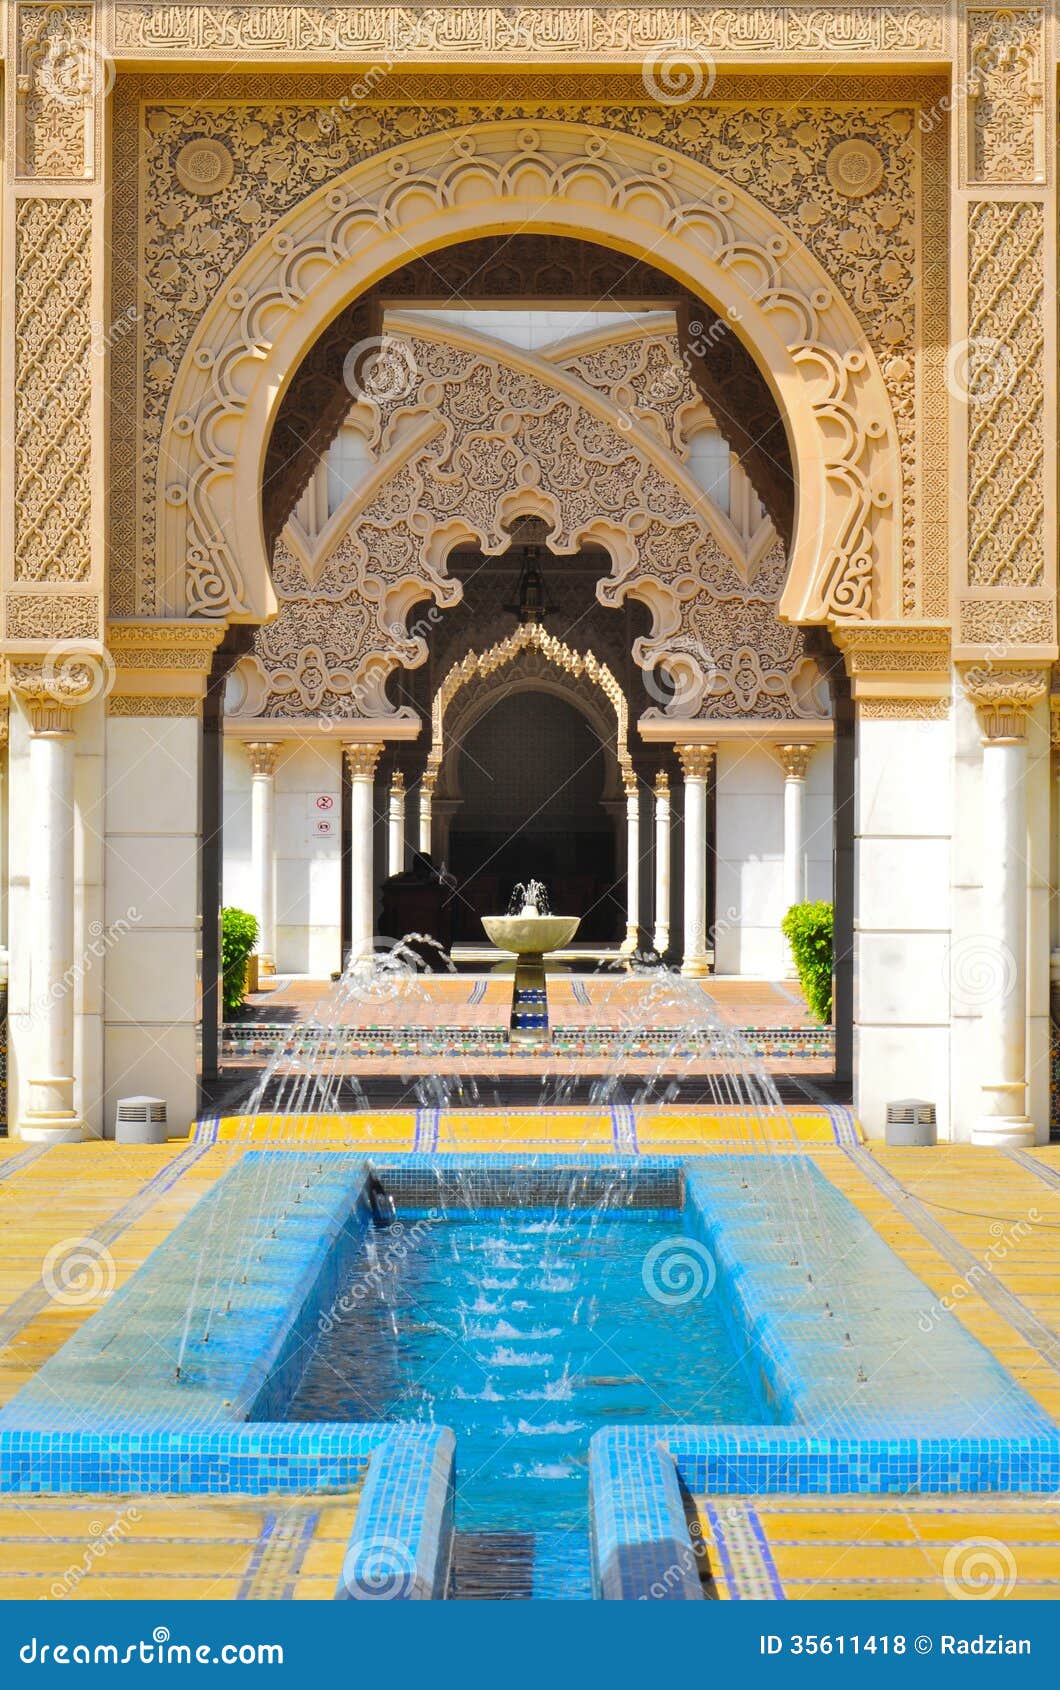 Fundo da arquitetura islâmica do detalhe. Arquitetura marroquina do detalhe do palácio do al-hambra. A imagem mostra uma porta beatifully decorada do palácio.